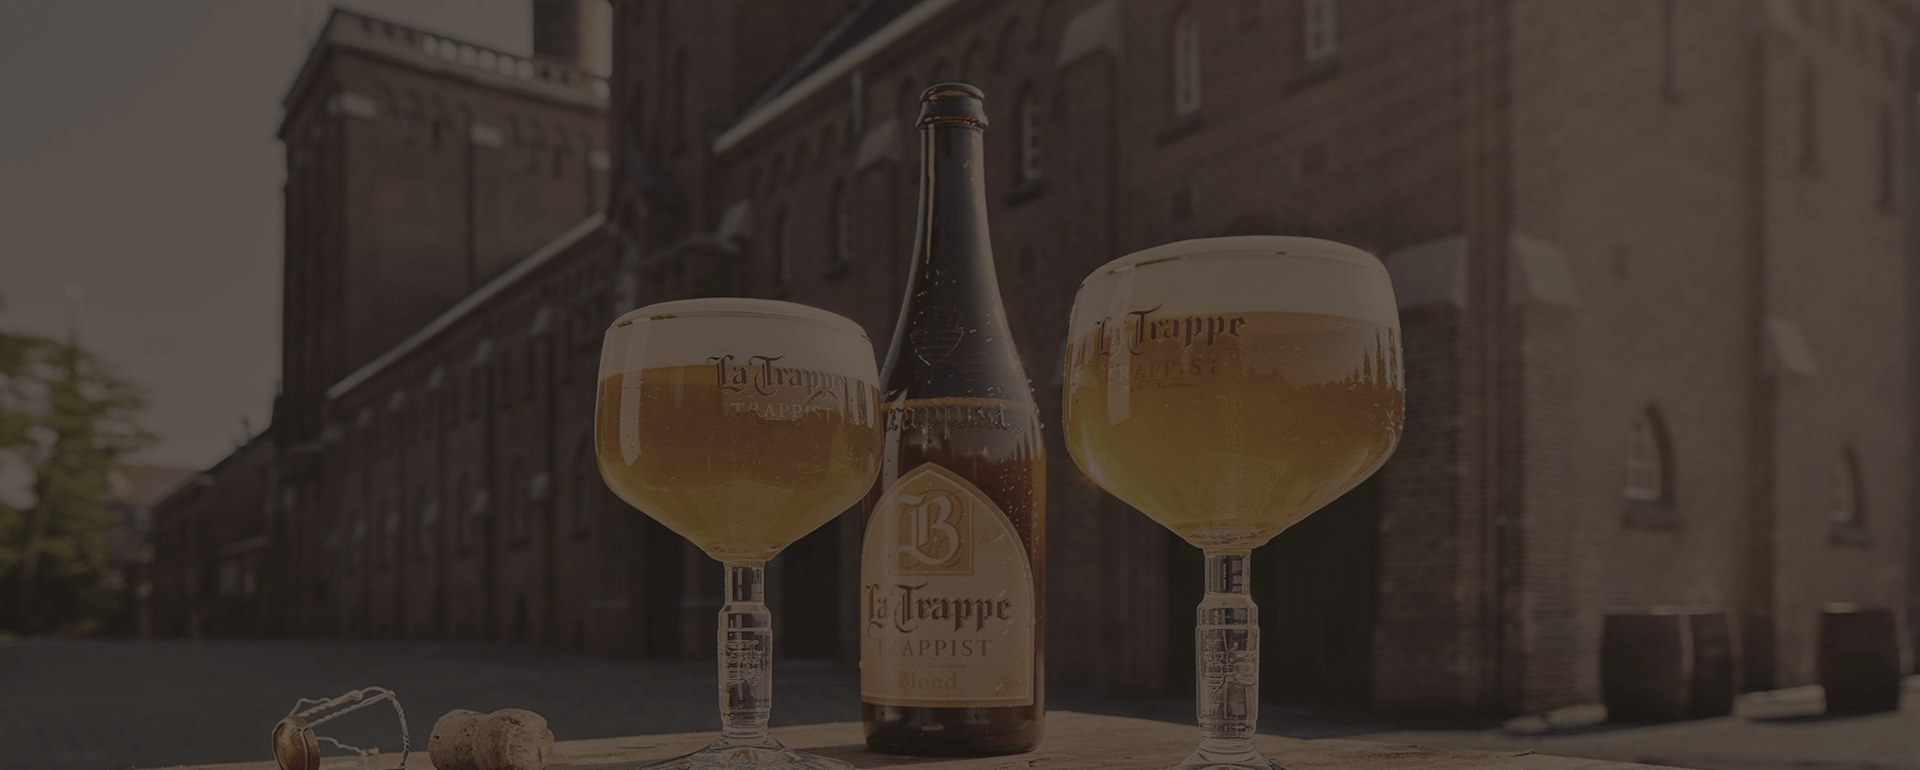 7ª BeerTrip - Bélgica e Holanda - Fevereiro de 2019